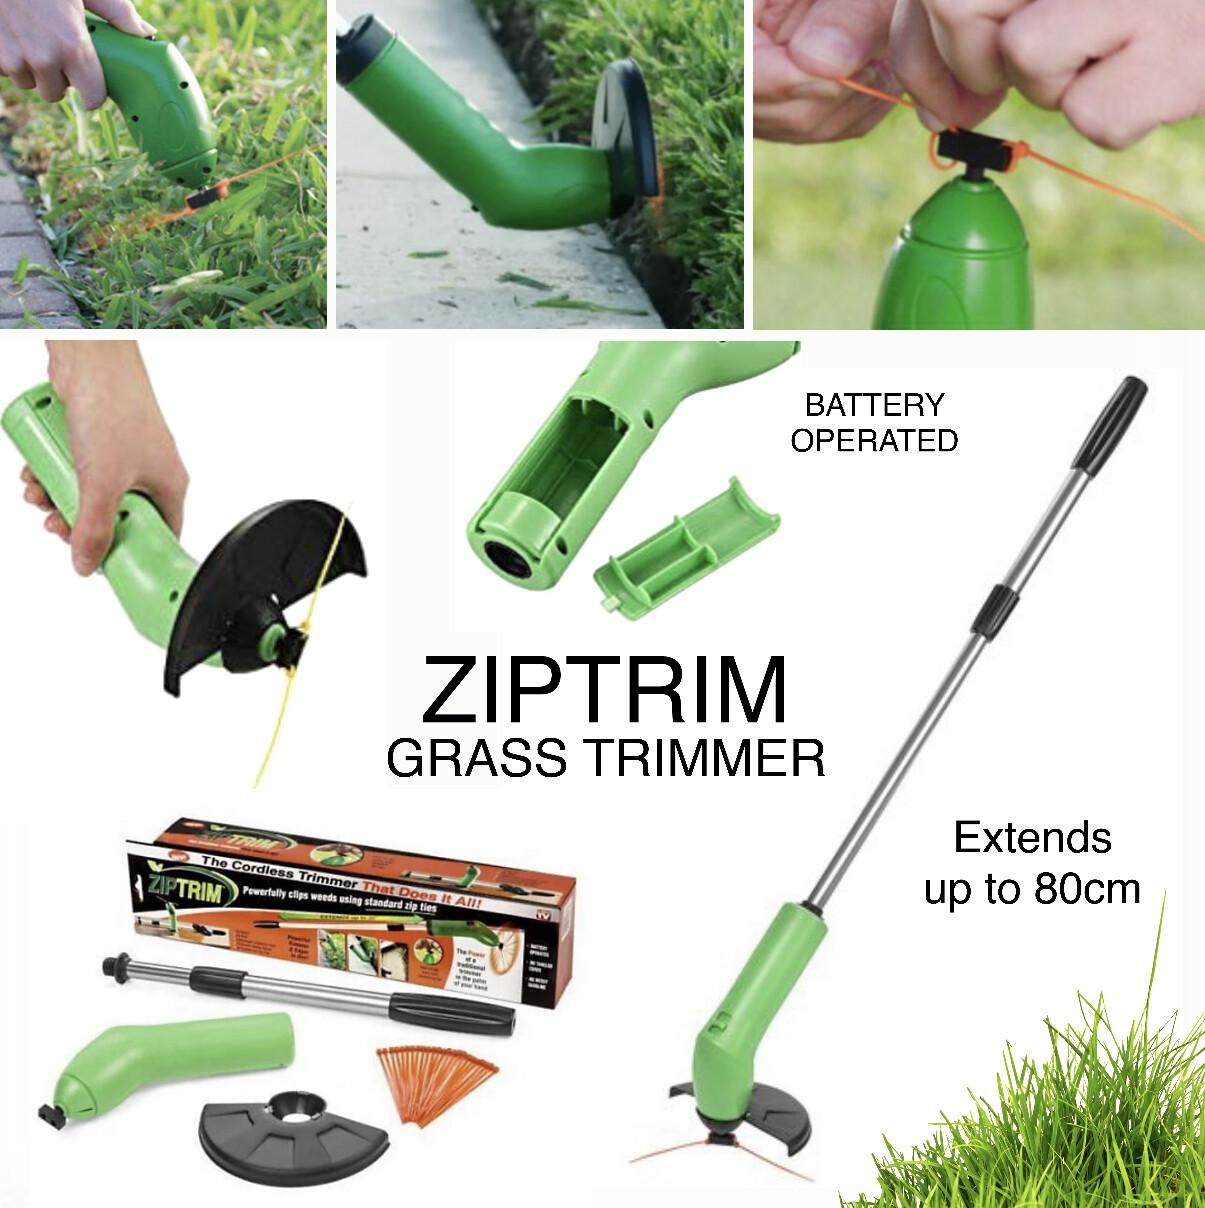 ZIPTRIM Grass Trimmer